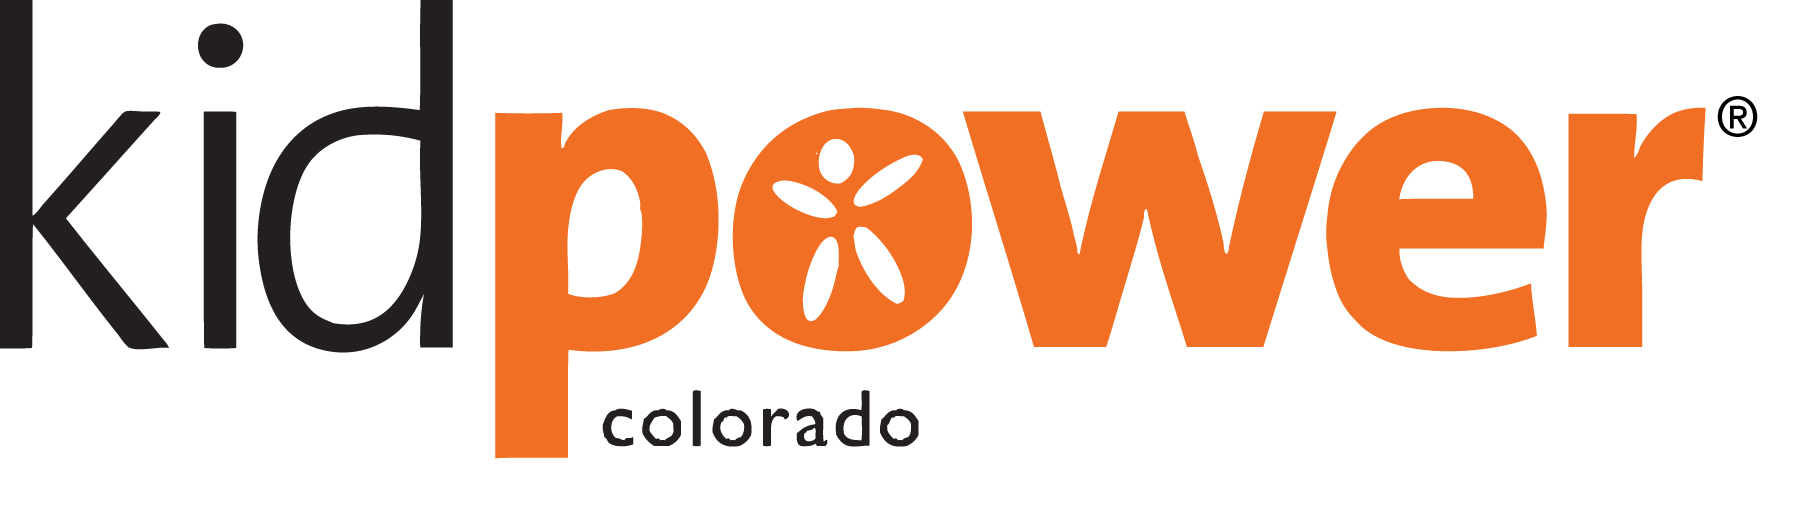 Kidpower of Colorado logo